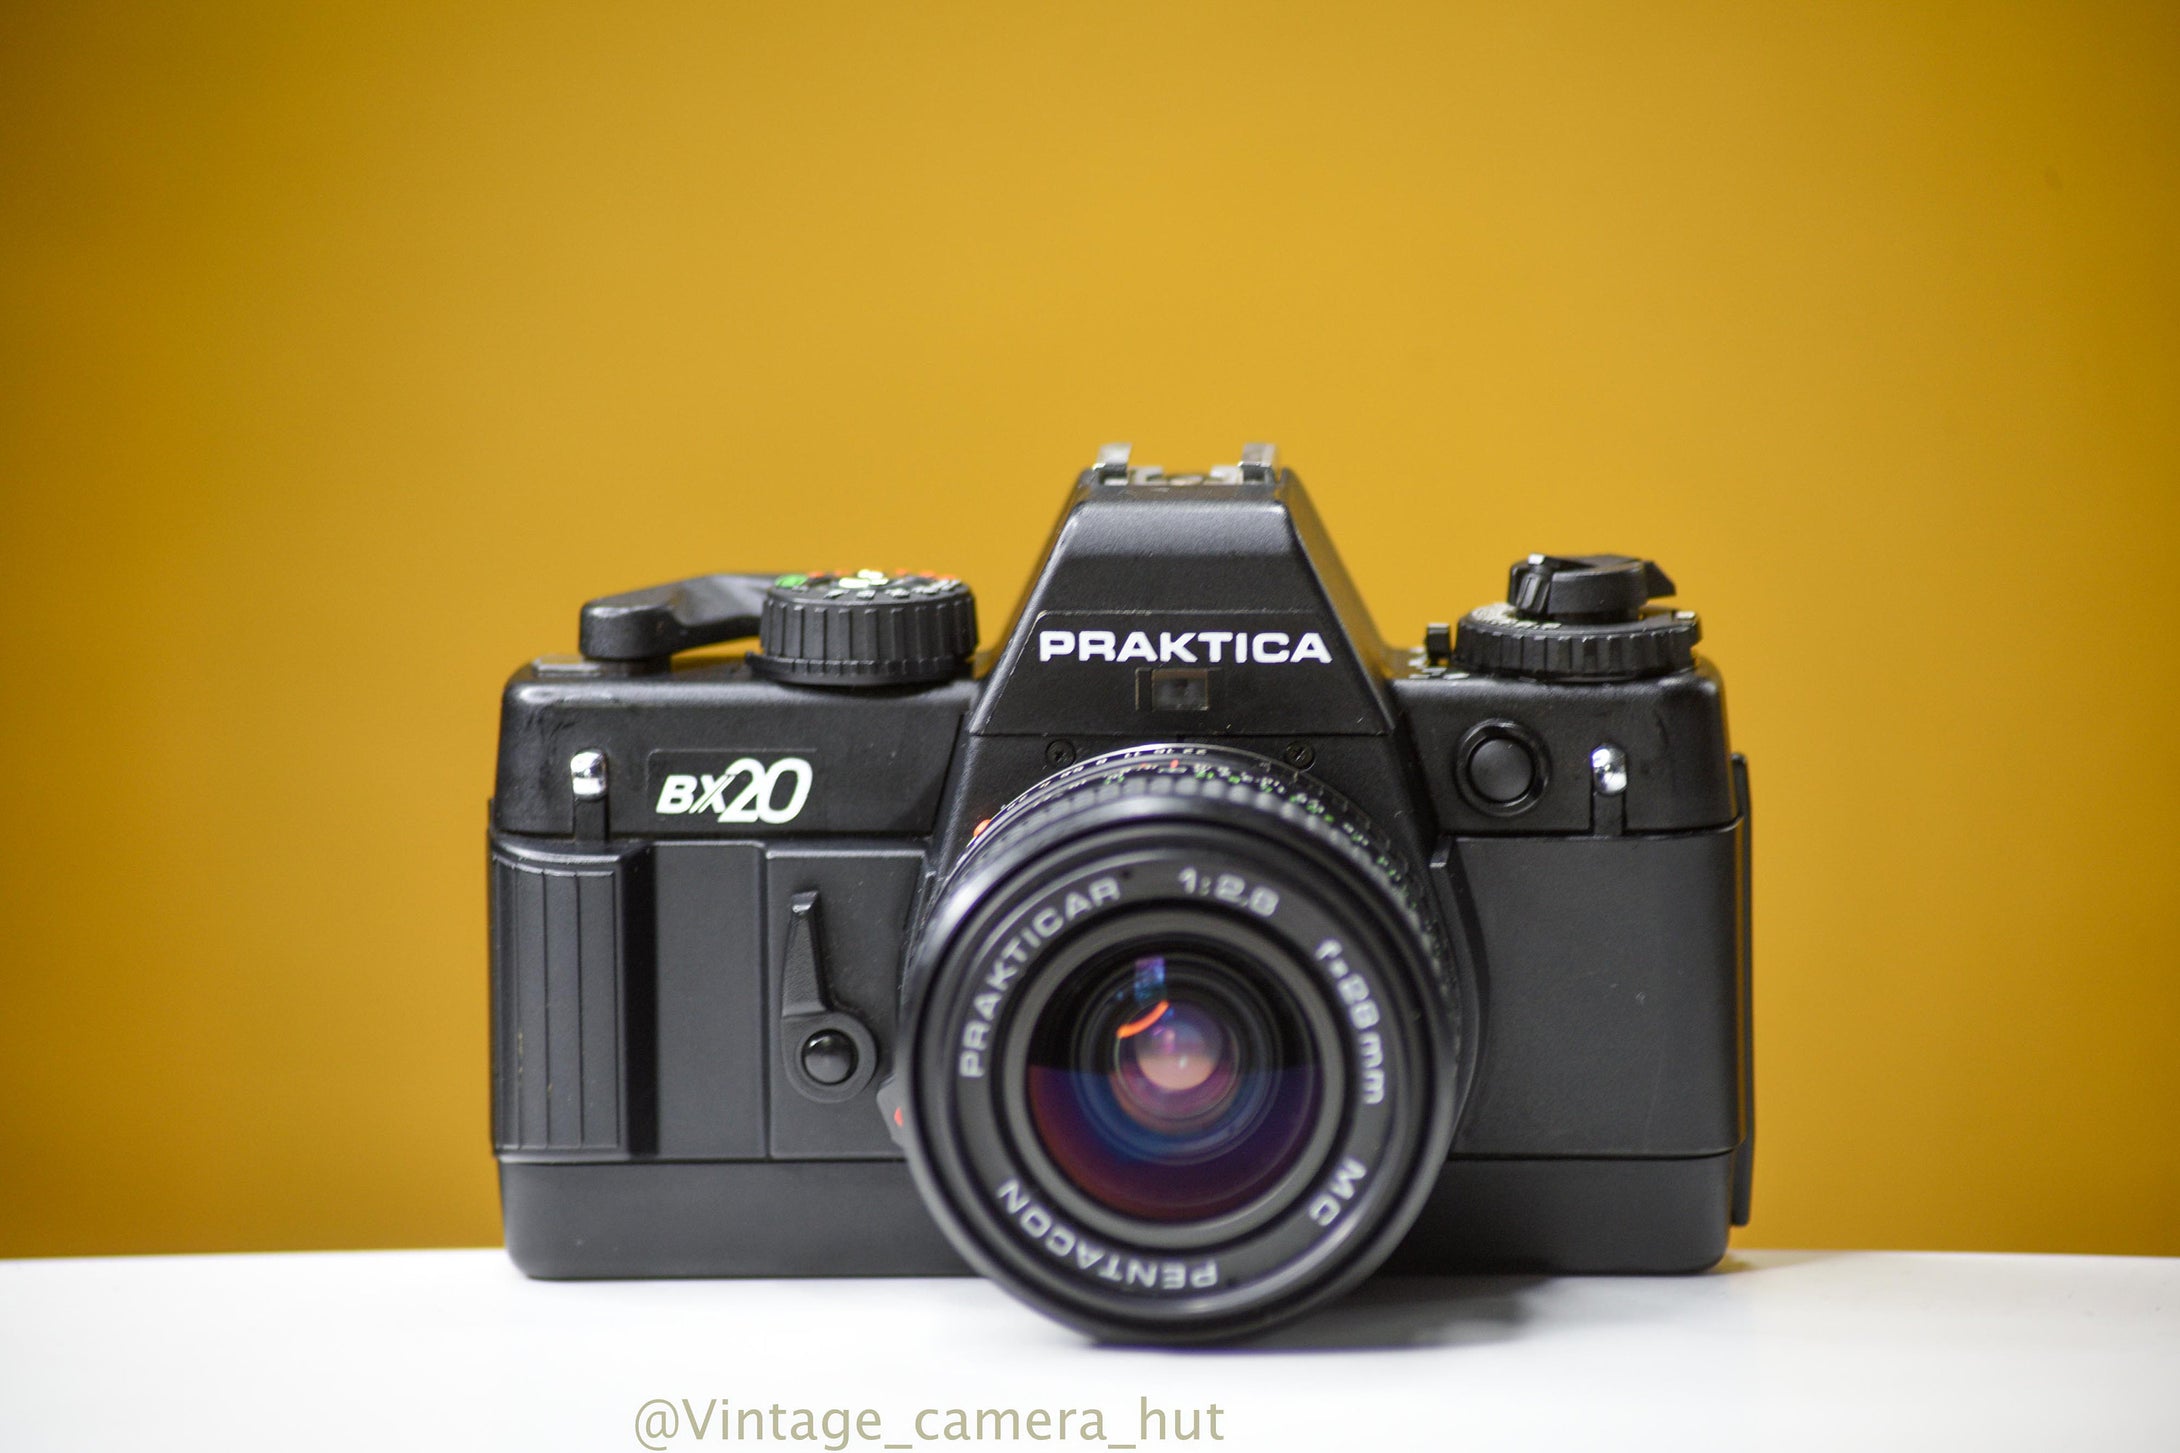 Praktica BX20 35mm Film Camera with Pentacon 28mm f/2.8 Lens